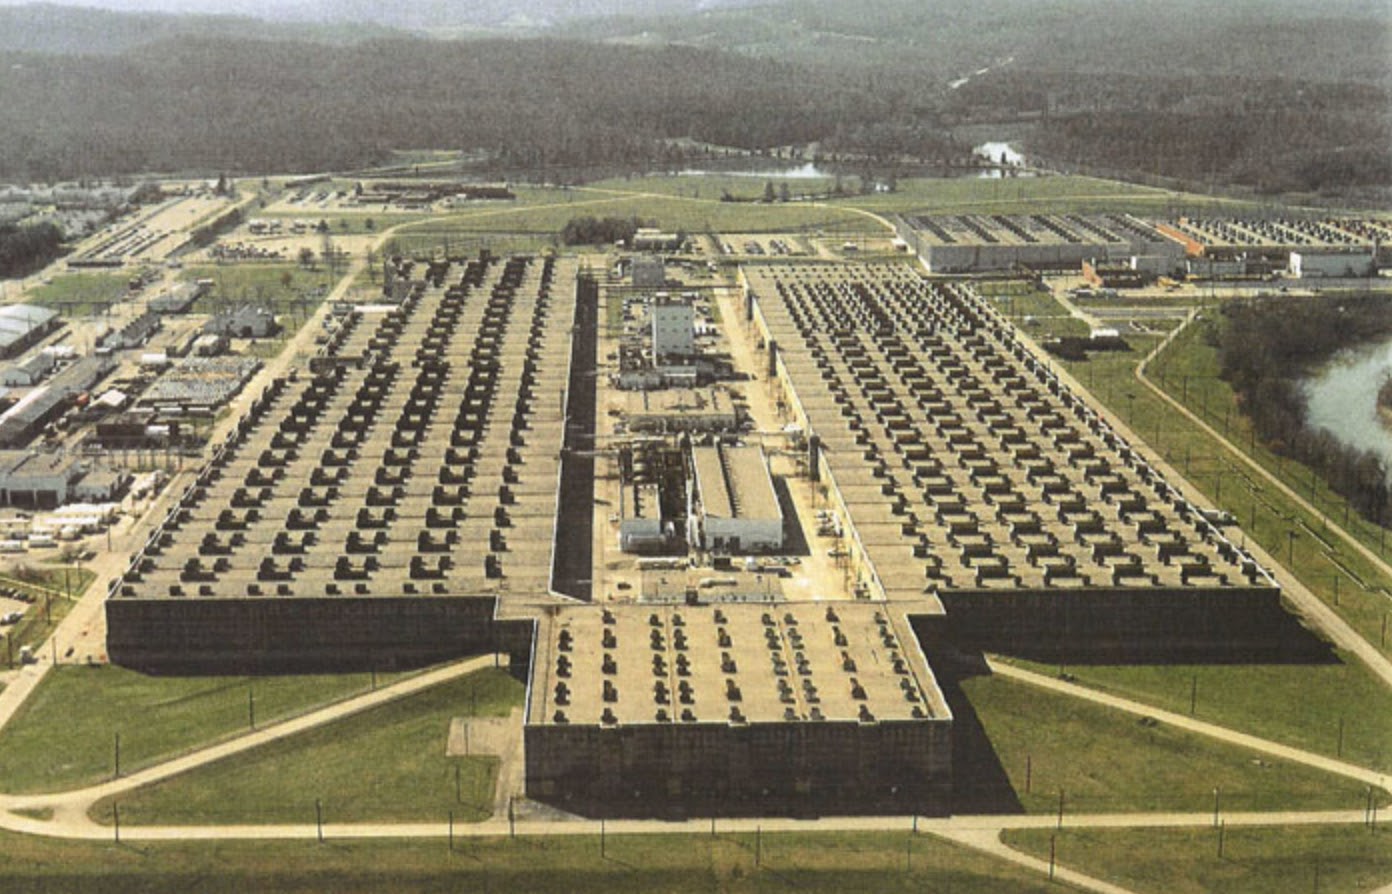 The K-25 uranium enrichment plant at Oak Ridge, Tennessee